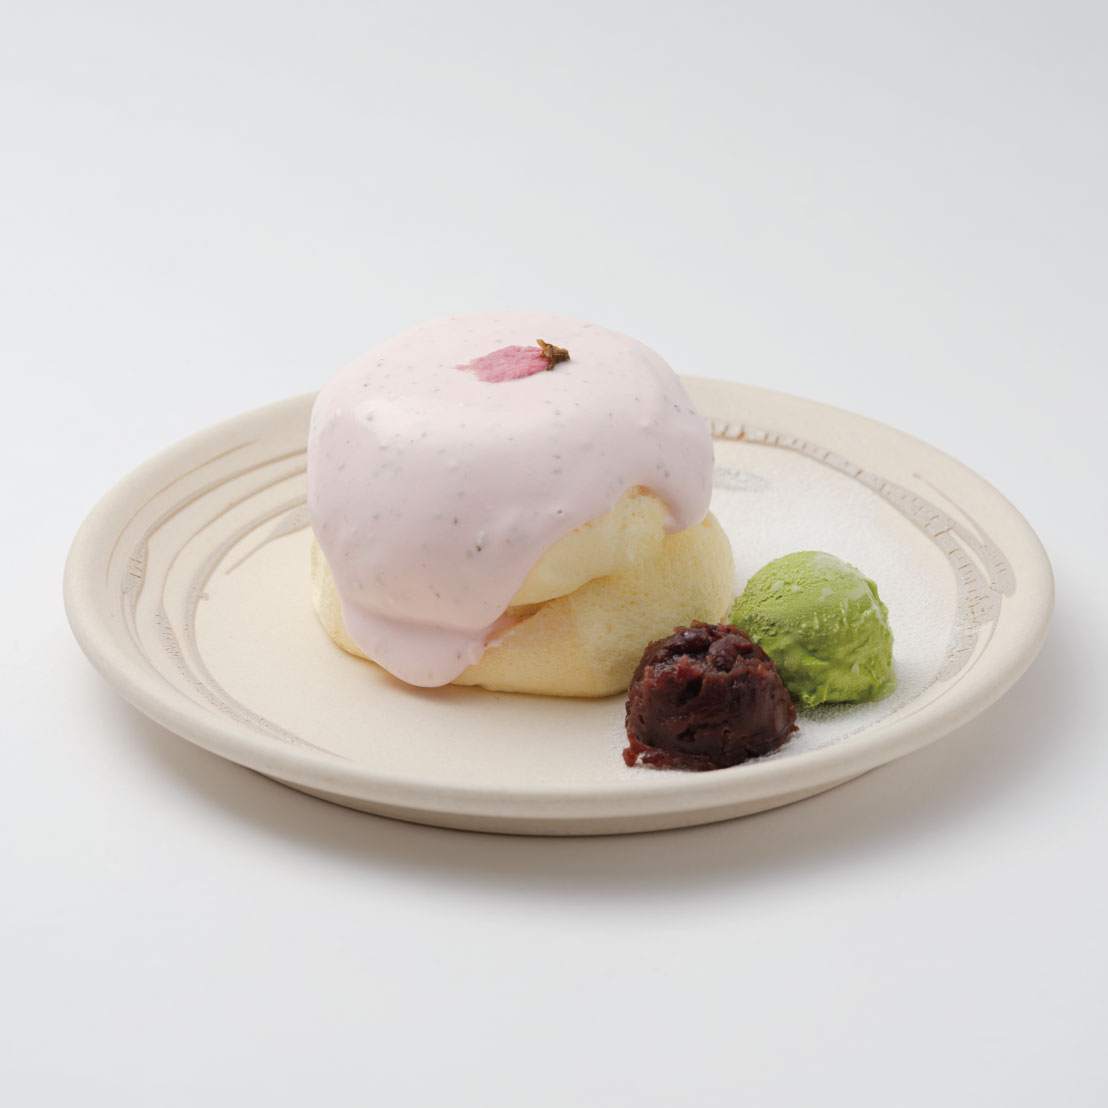 さくらのパンケーキ<br><span>Cherry Blossom Pancake</span><br>¥1750